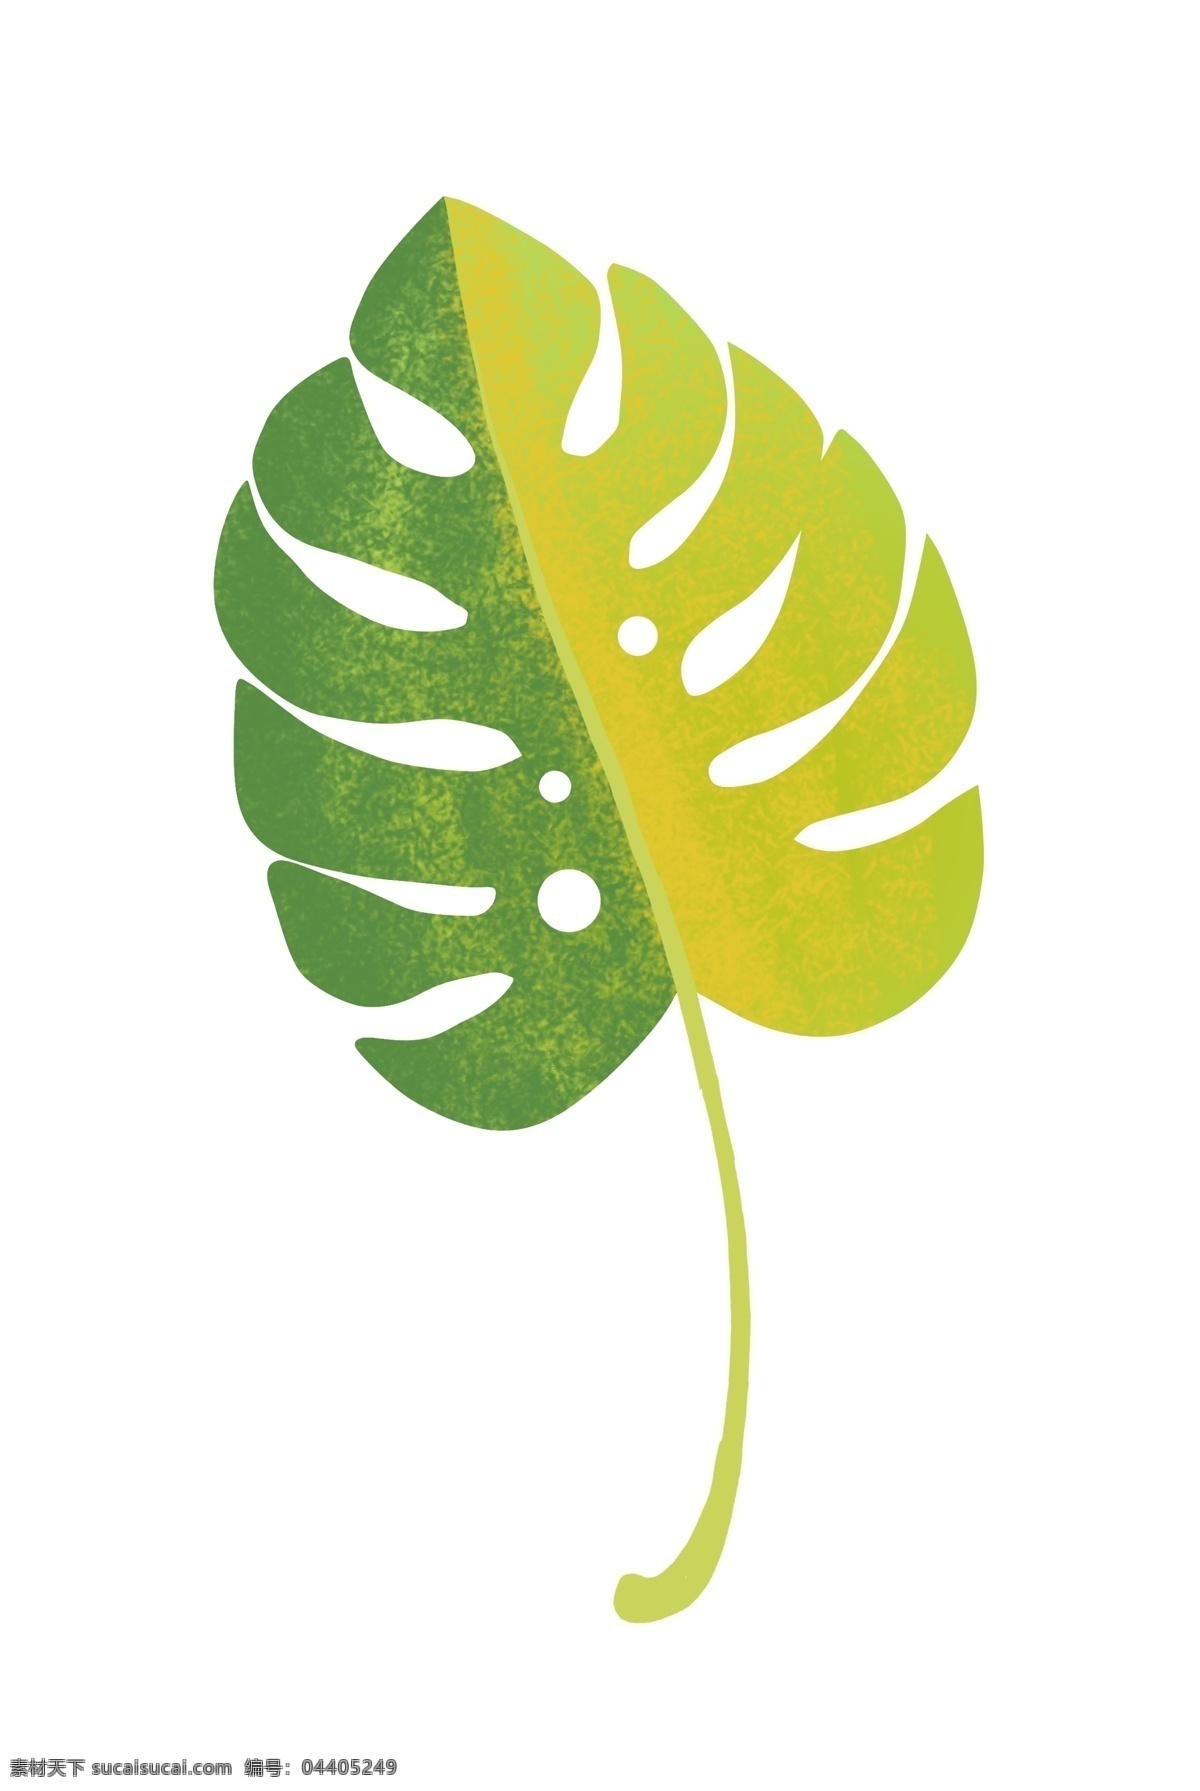 泛黄 绿色 叶子 插画 一片叶子 树叶 植物 植物插画 泛黄的叶子 绿叶插画 卡通植物插画 精美的树叶